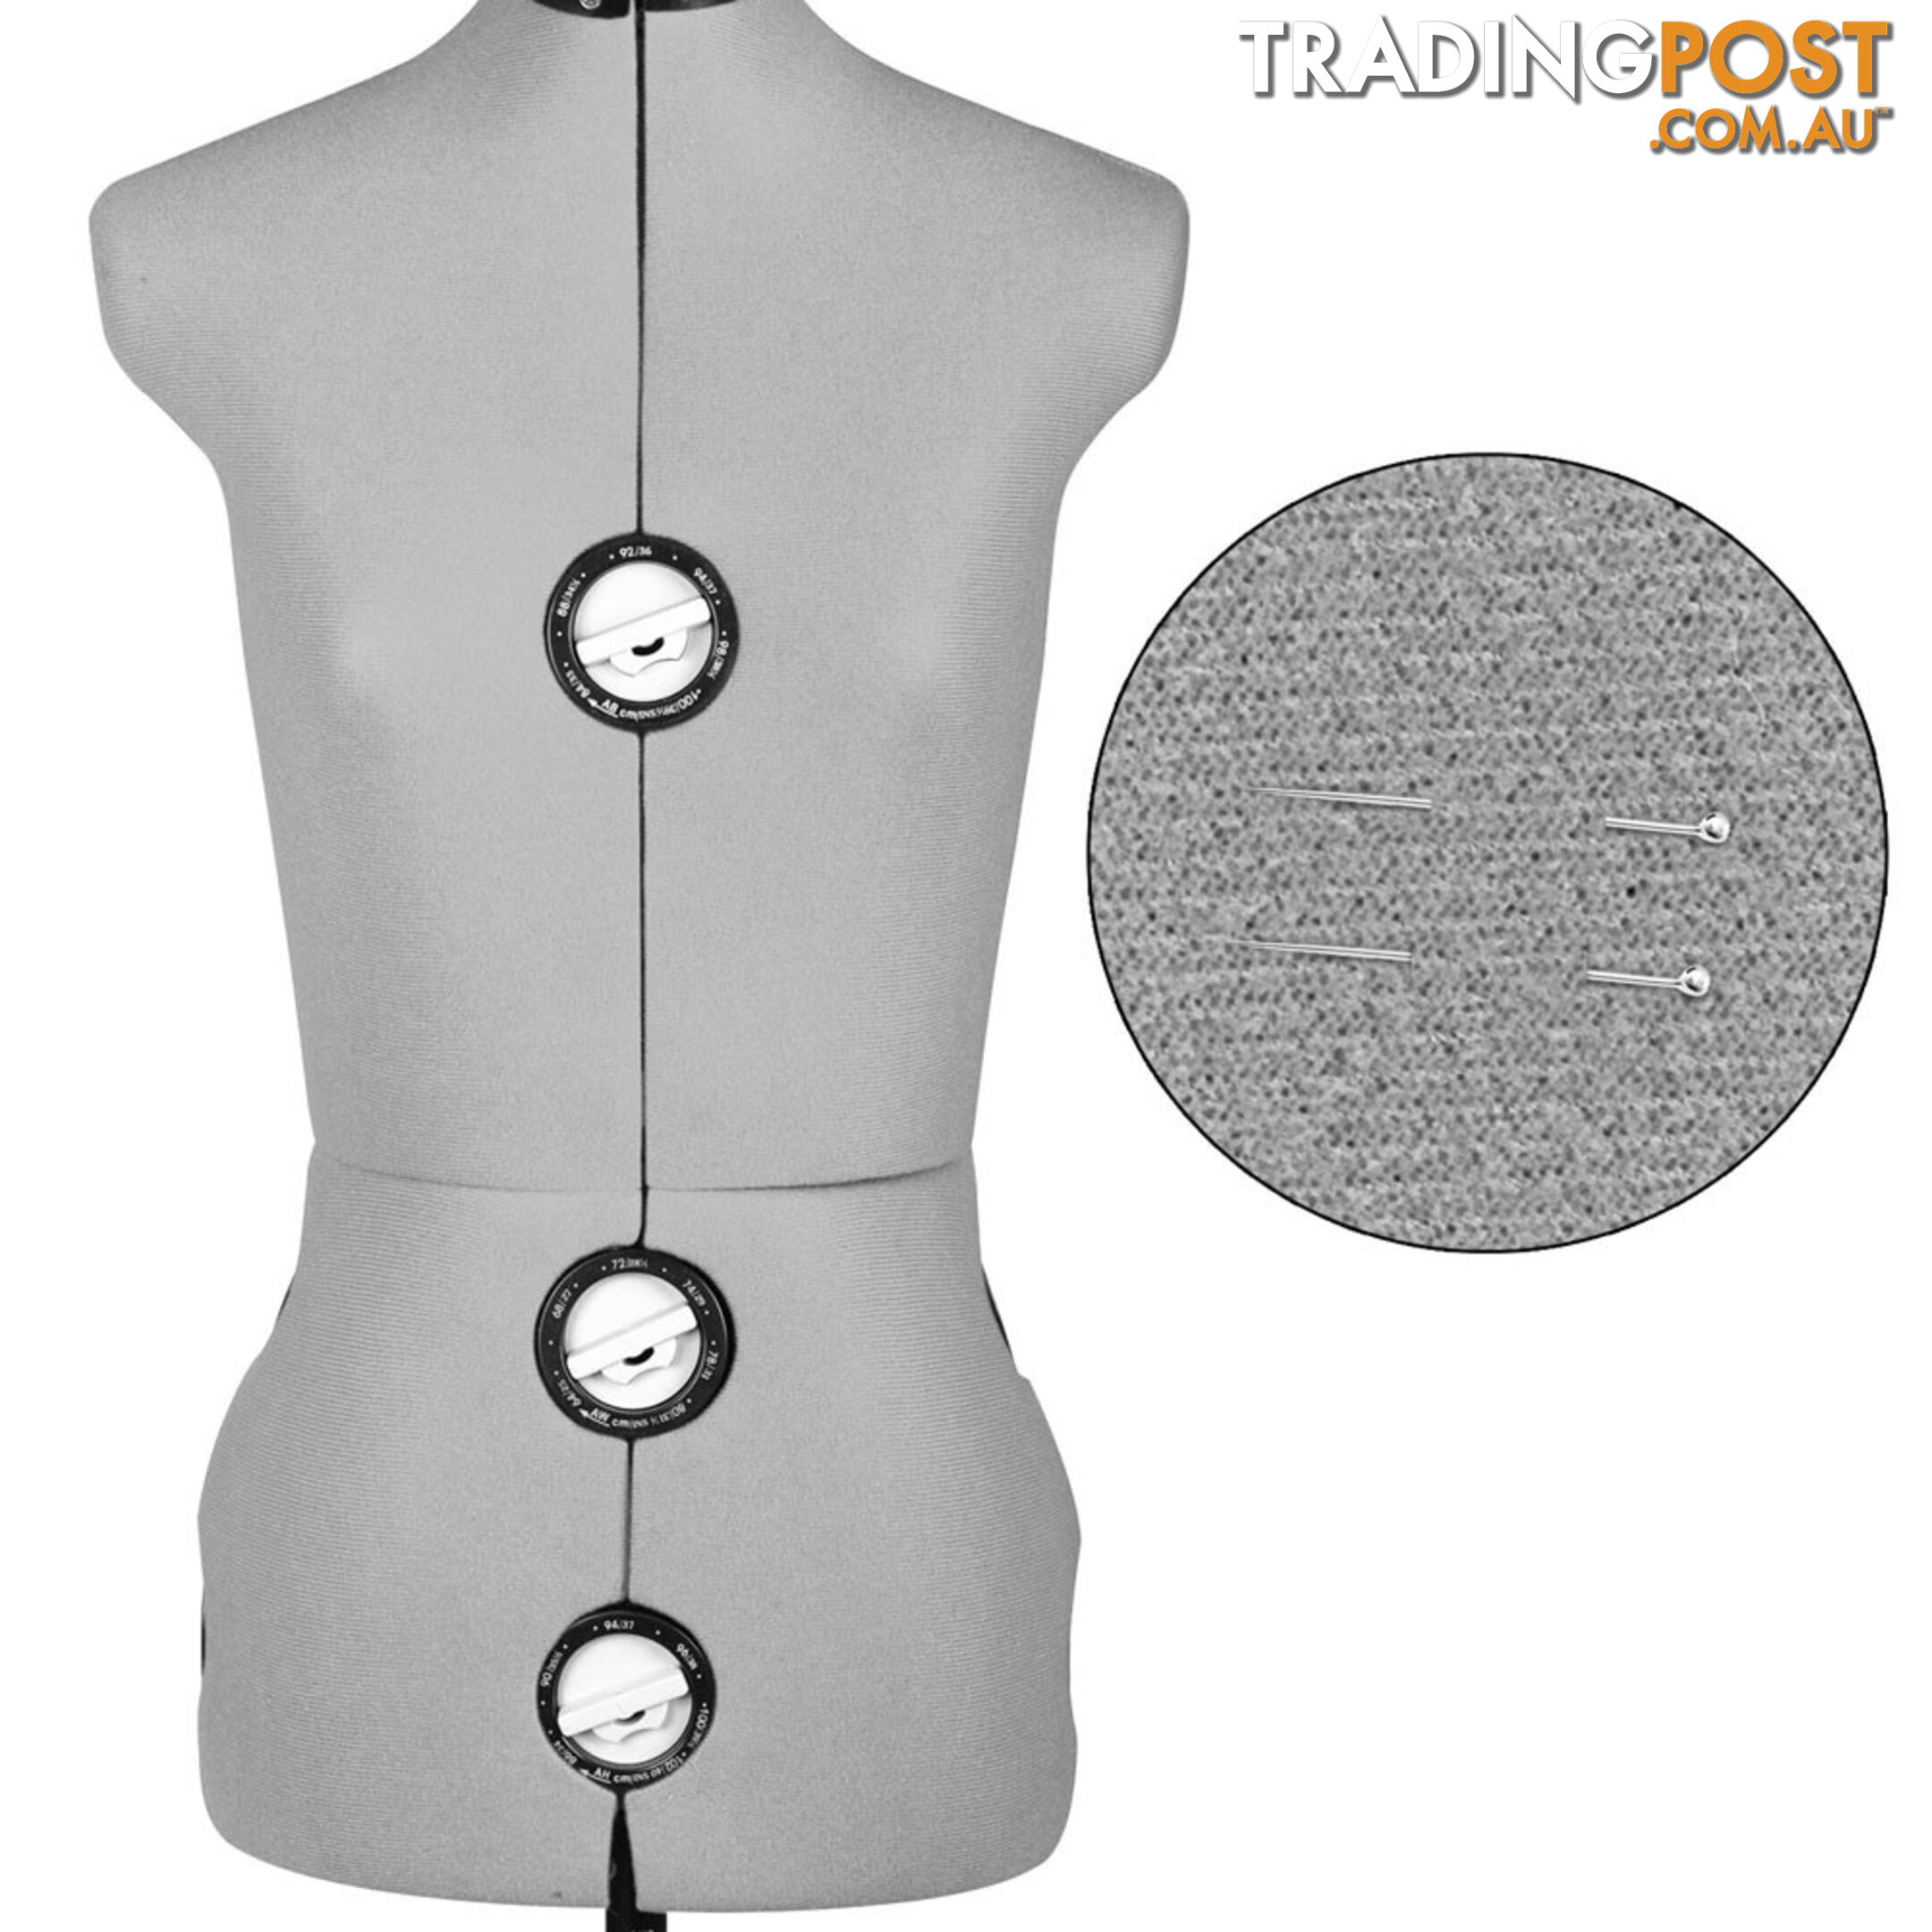 Adjustable Dressmaking Mannequin SZ8-14 - Grey